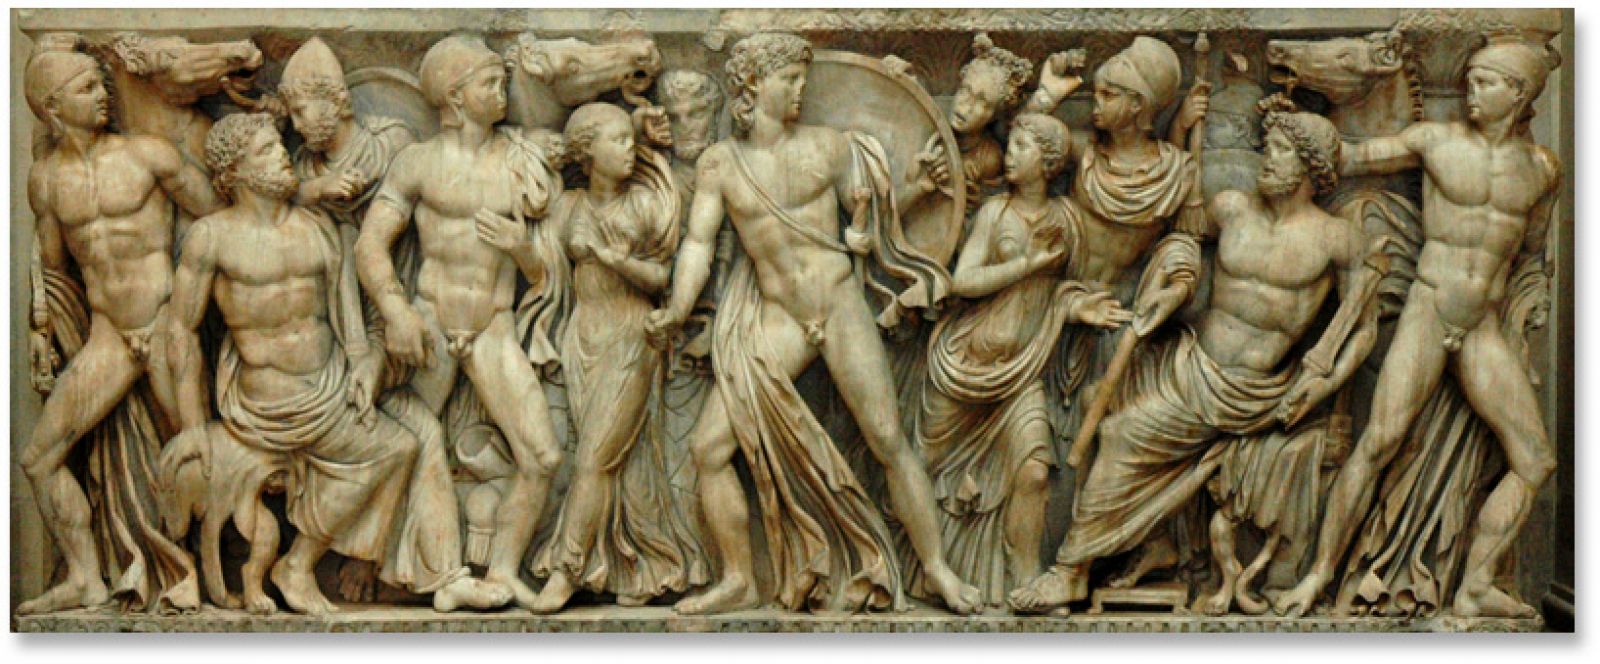 En el Museo del Louvre, en París, se conserva este frontispicio tallado en mármol, en el que se representa una escena de La Ilíada, protagonizada por la figura de Aquiles